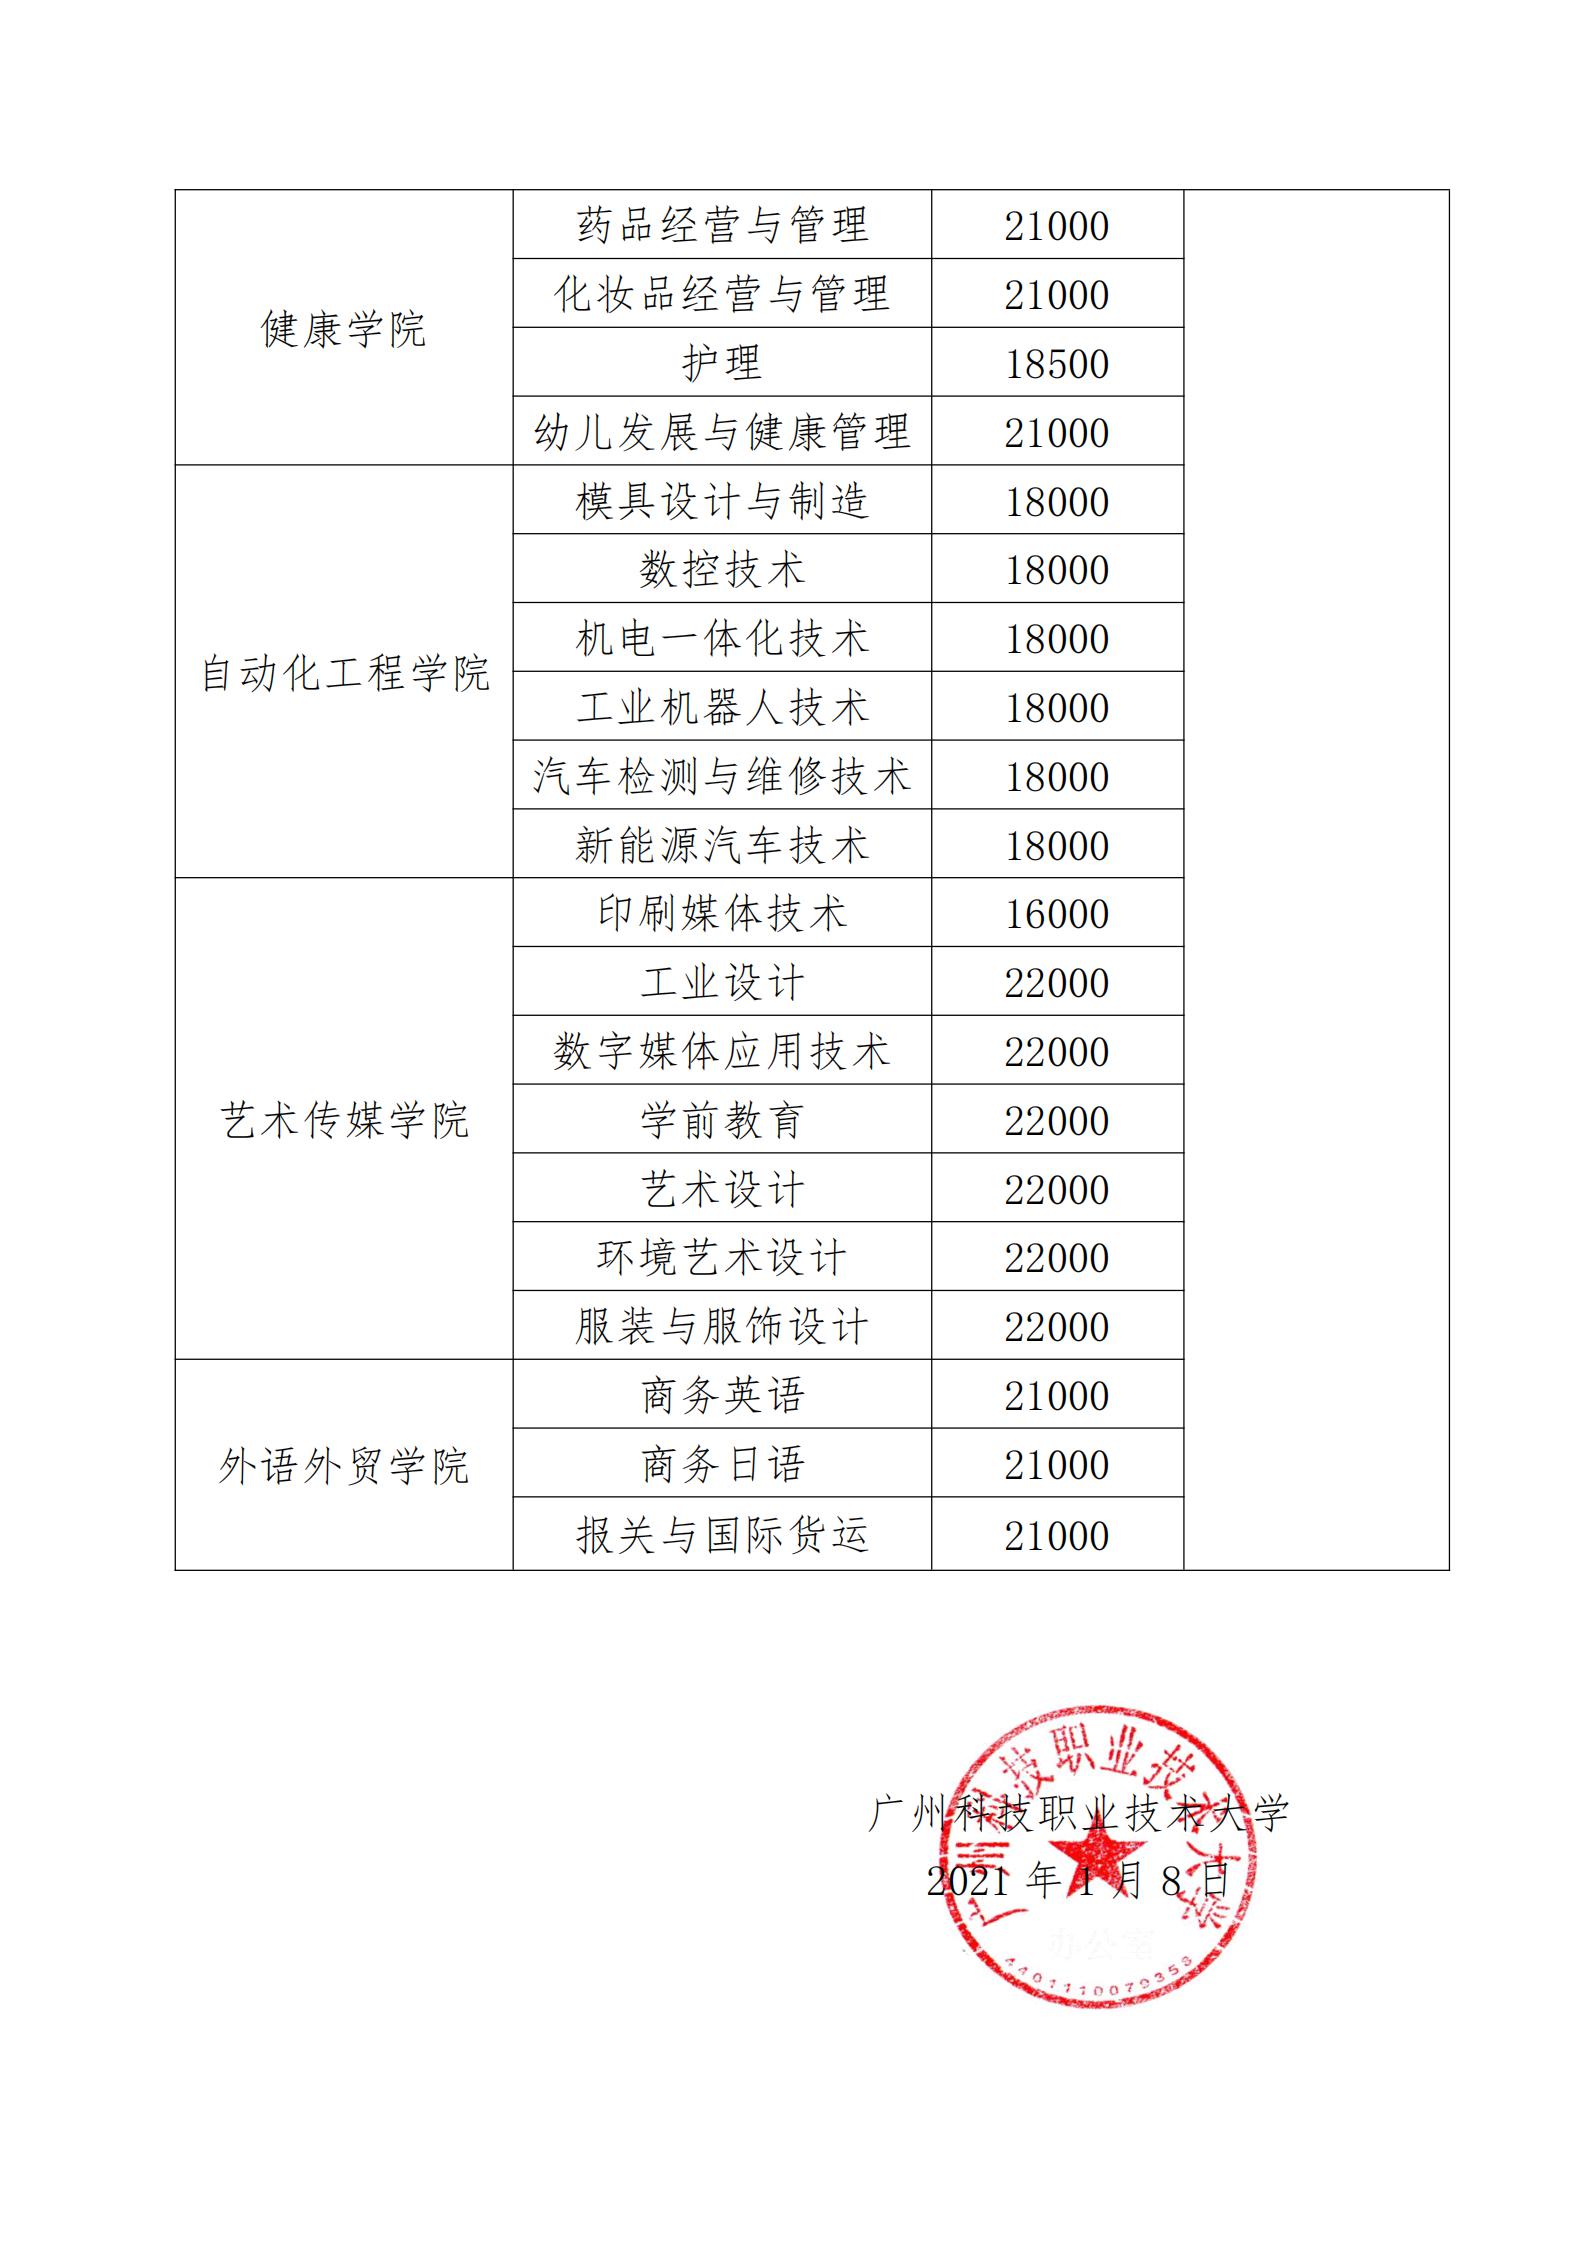 2021年广州科技职业技术大学招生本科专业学费及住宿费公示表_02.jpg